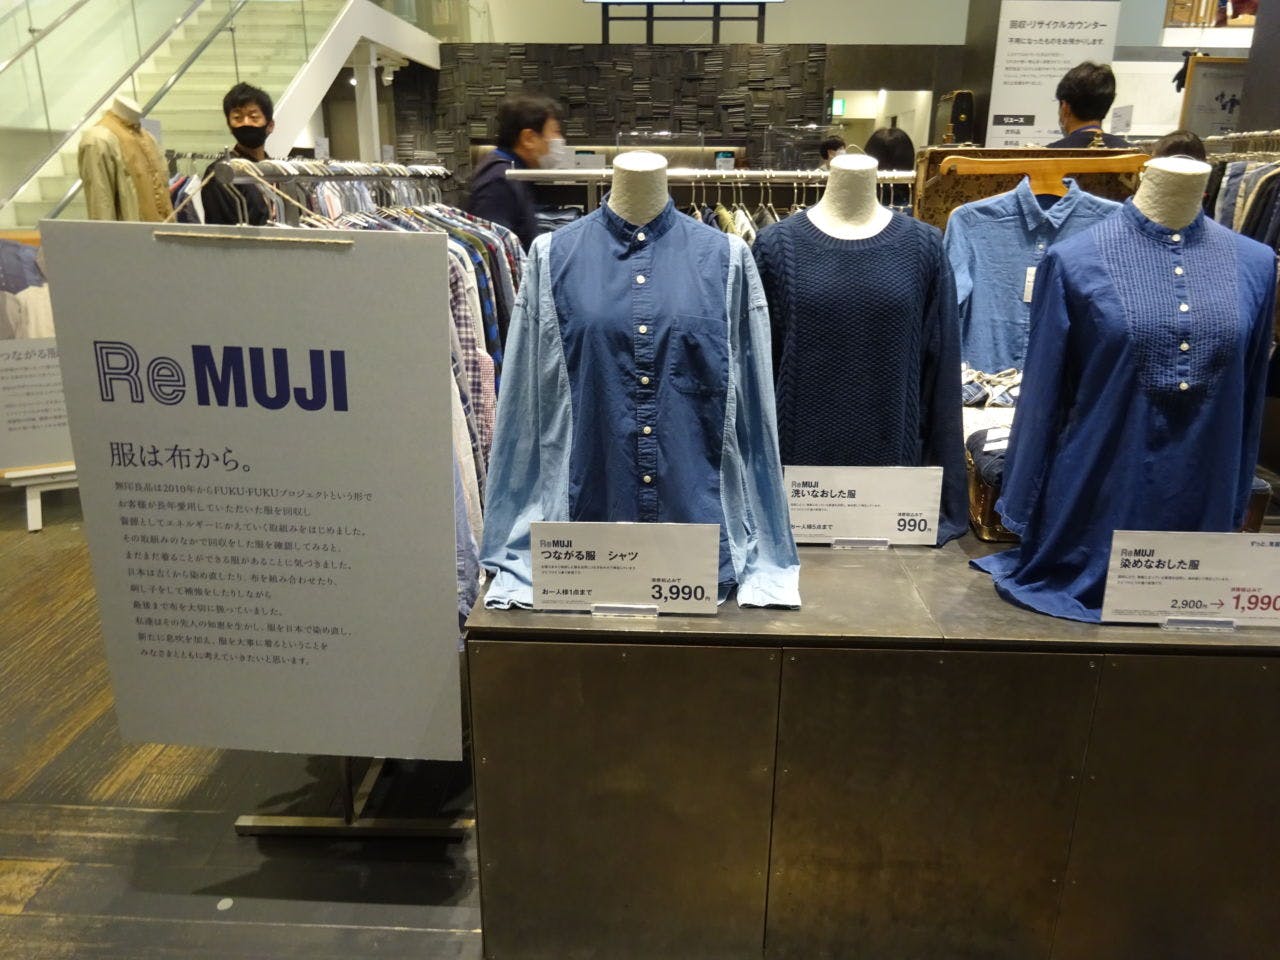 回収した衣料品を再商品化する「ReMUJI」コーナー